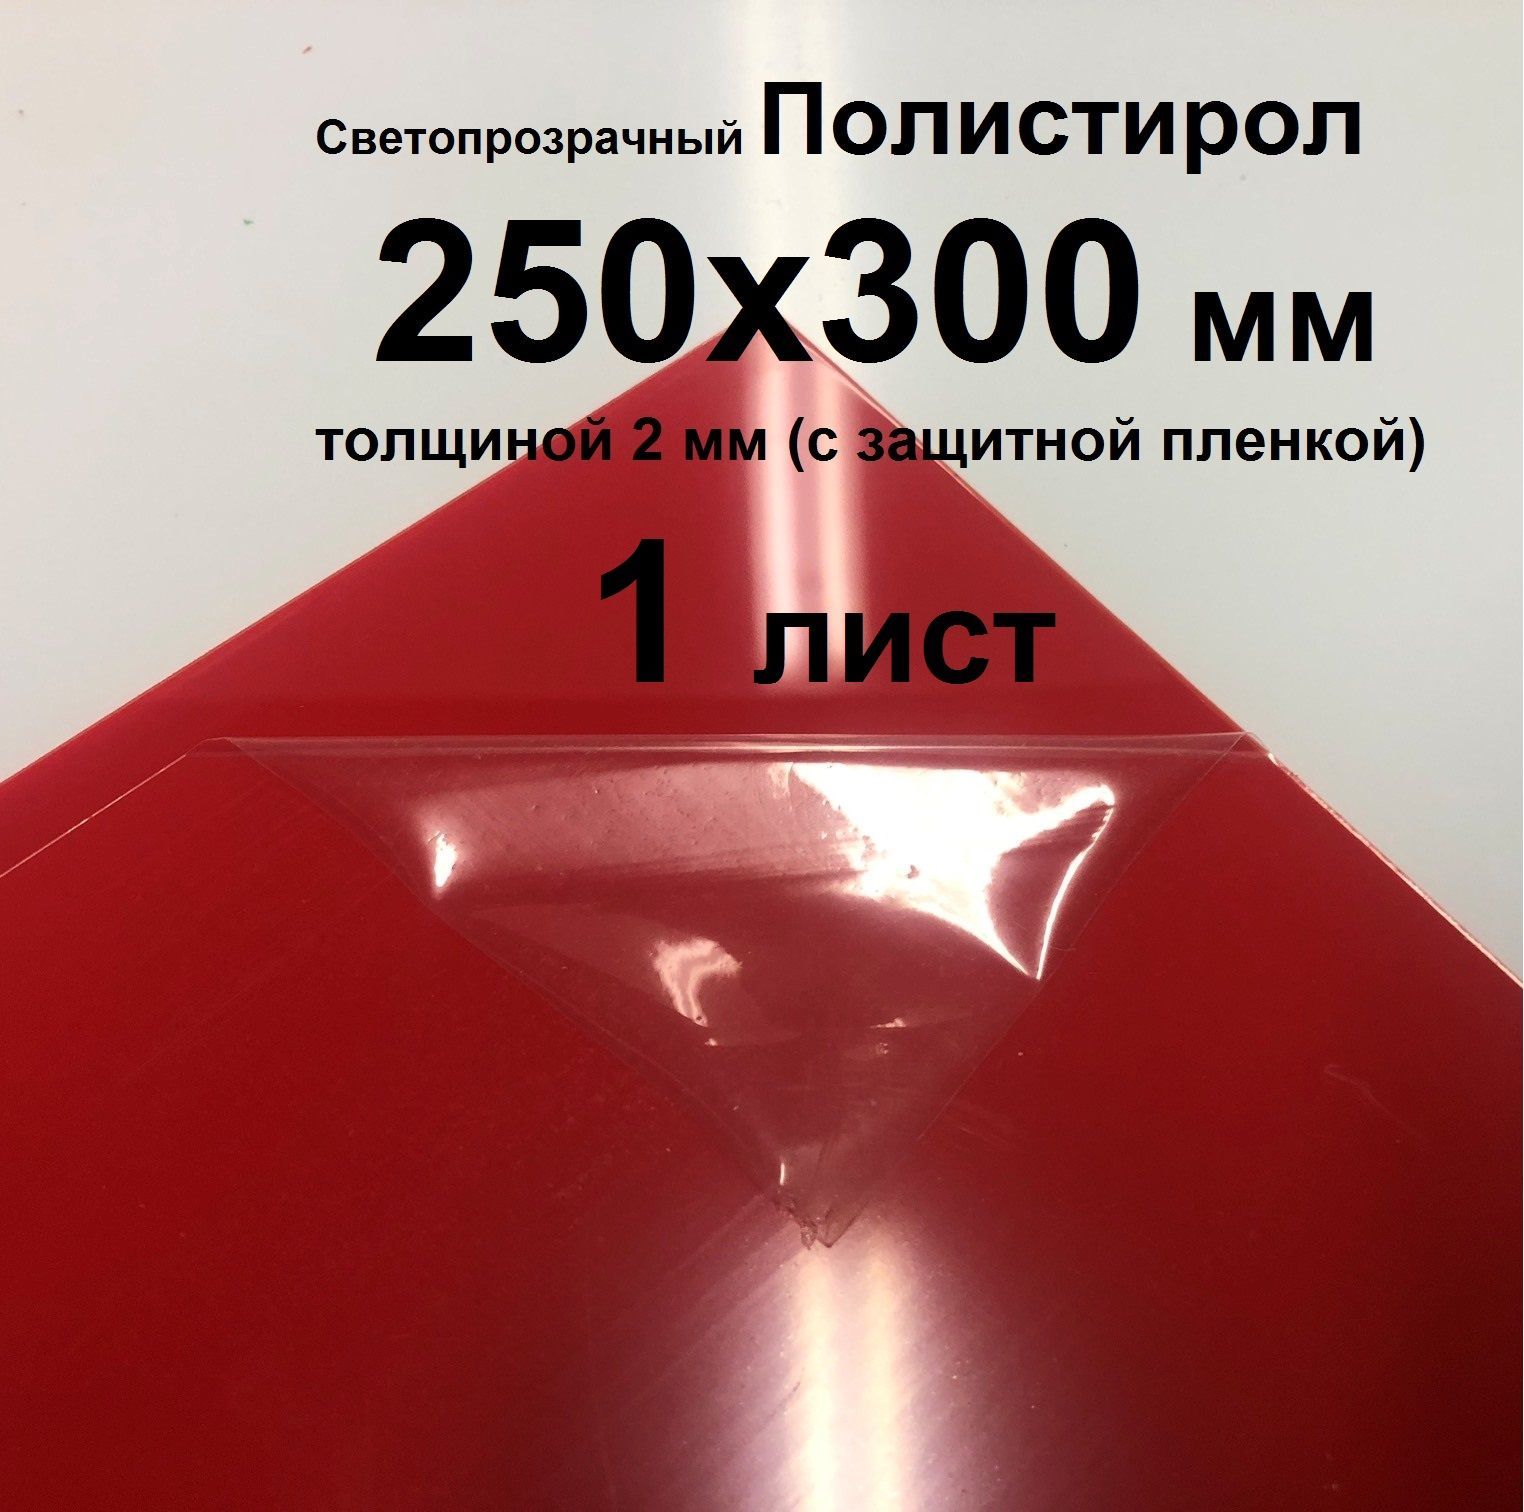 СветопрозрачныйКрасныйполистирол250*300*2ммсзащитнойпленкой(1шт.)